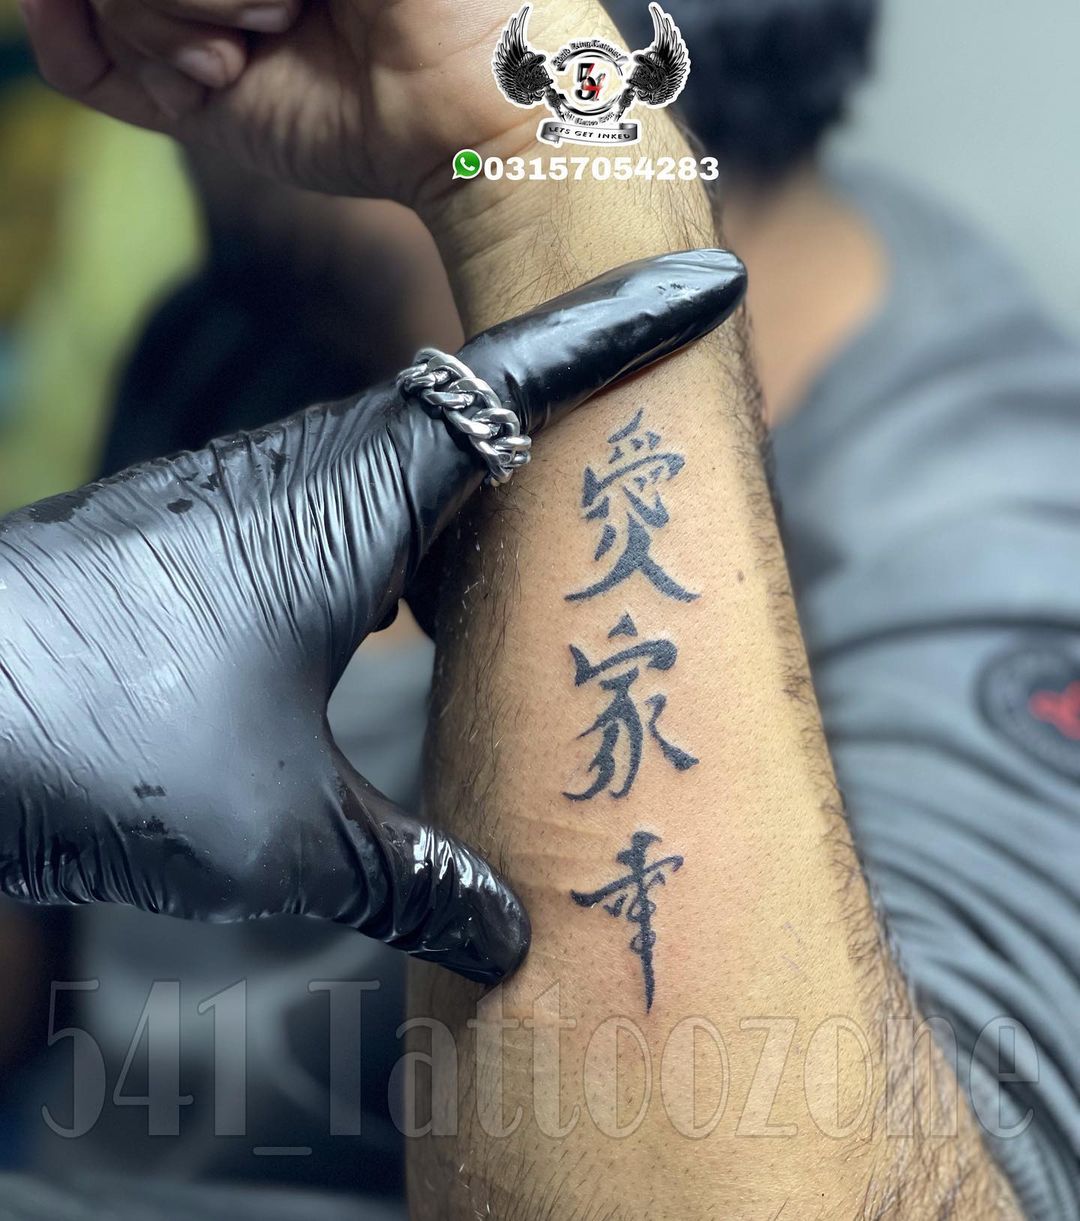 Chinese Script Tattoo Design